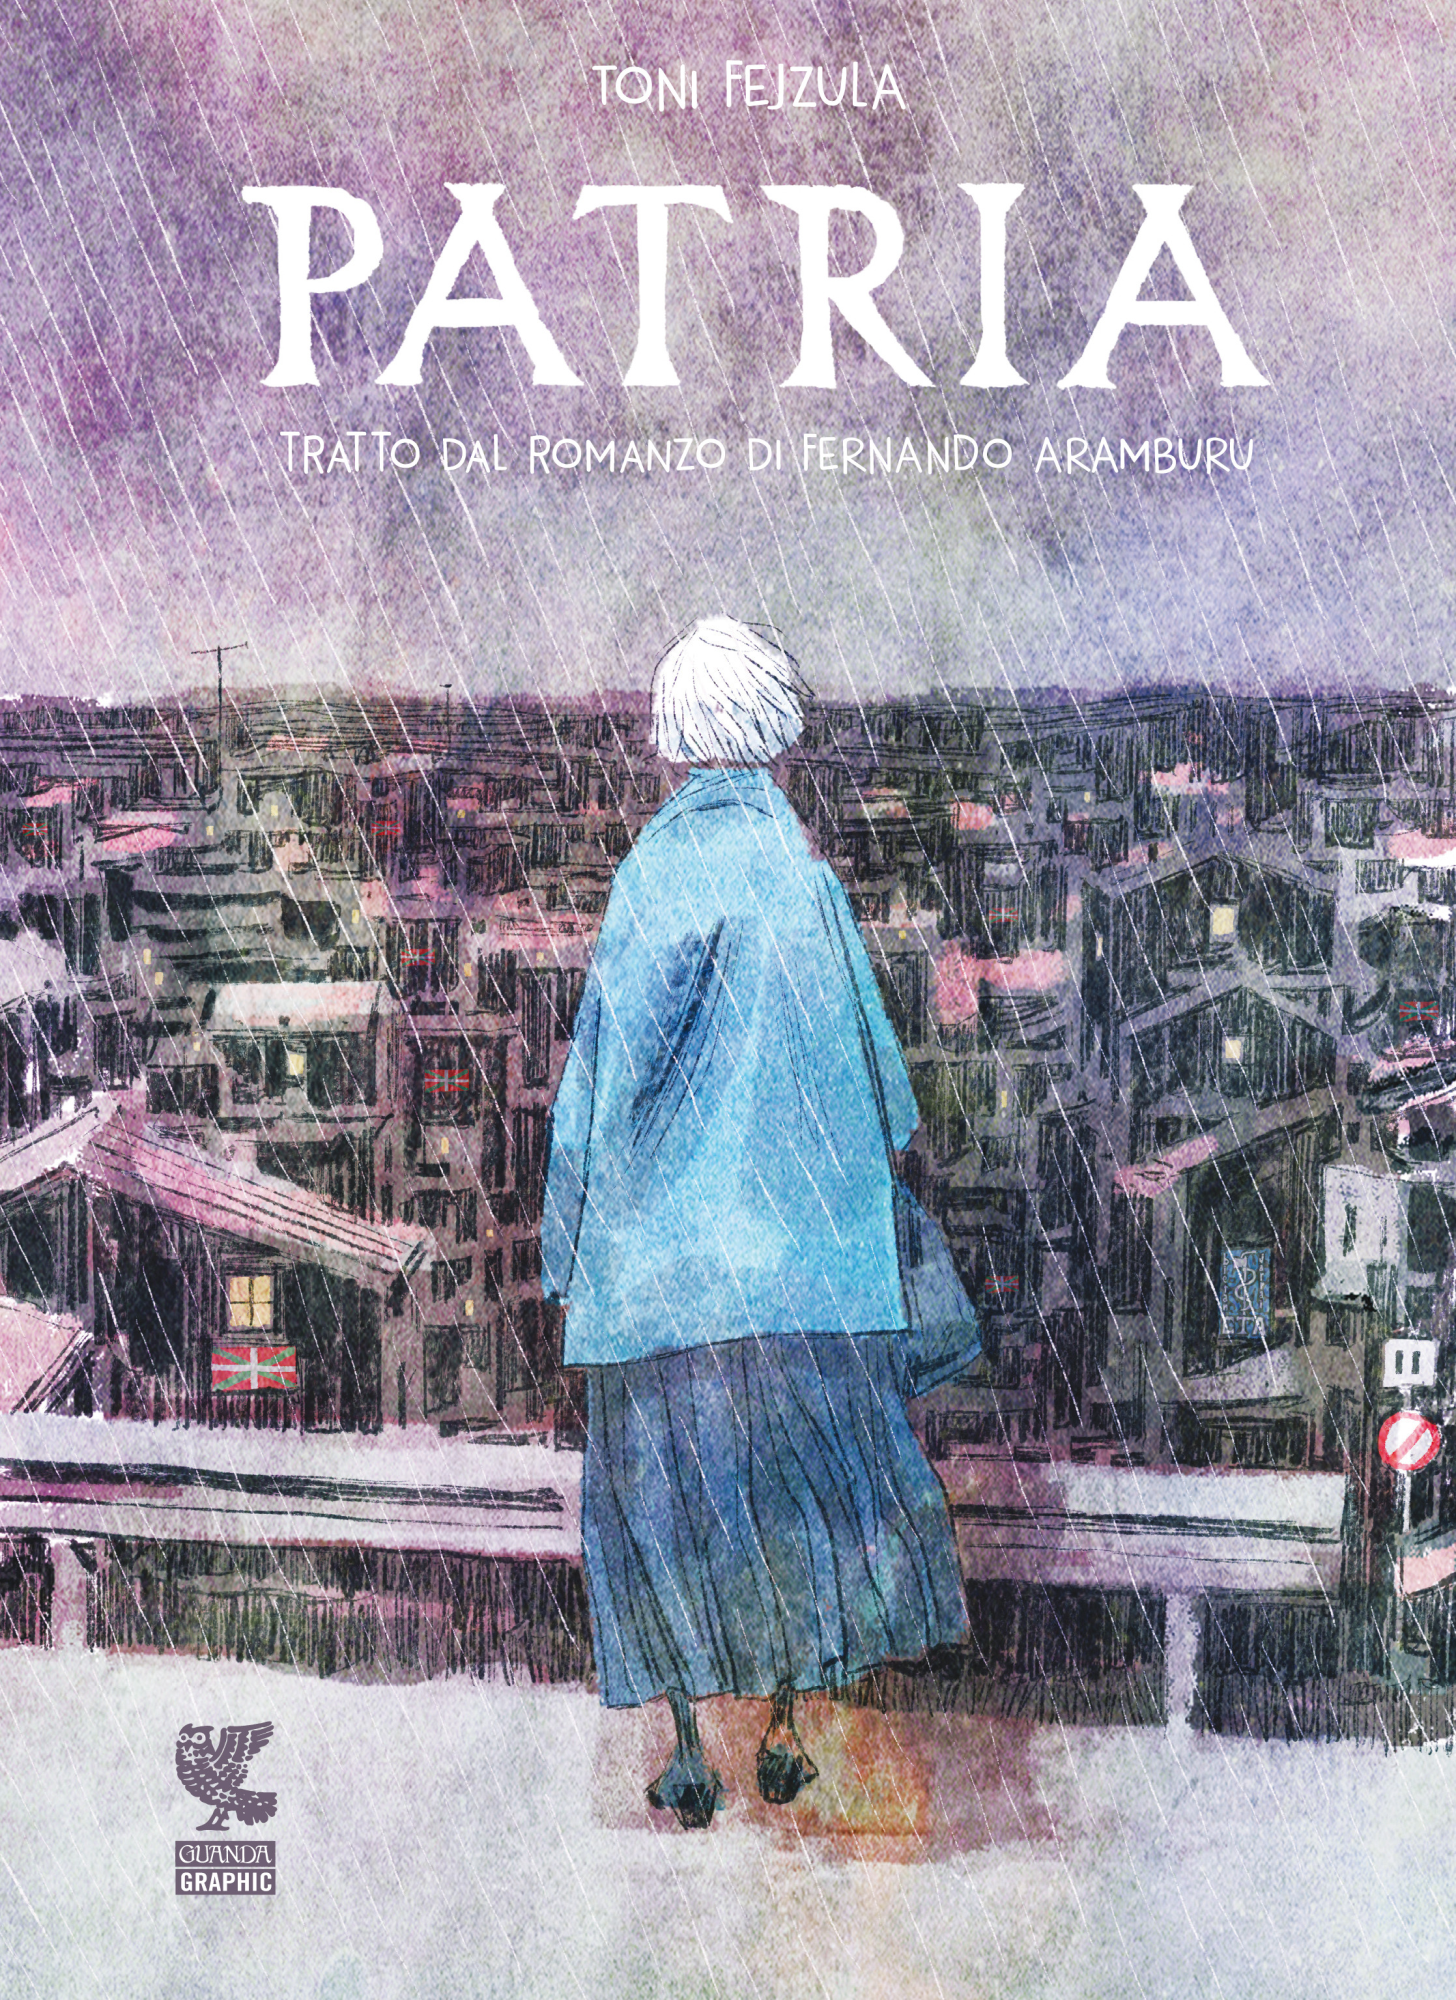 Libri Toni Fejzula / Fernando Aramburu - Patria. Graphic Novel NUOVO SIGILLATO, EDIZIONE DEL 12/11/2020 SUBITO DISPONIBILE